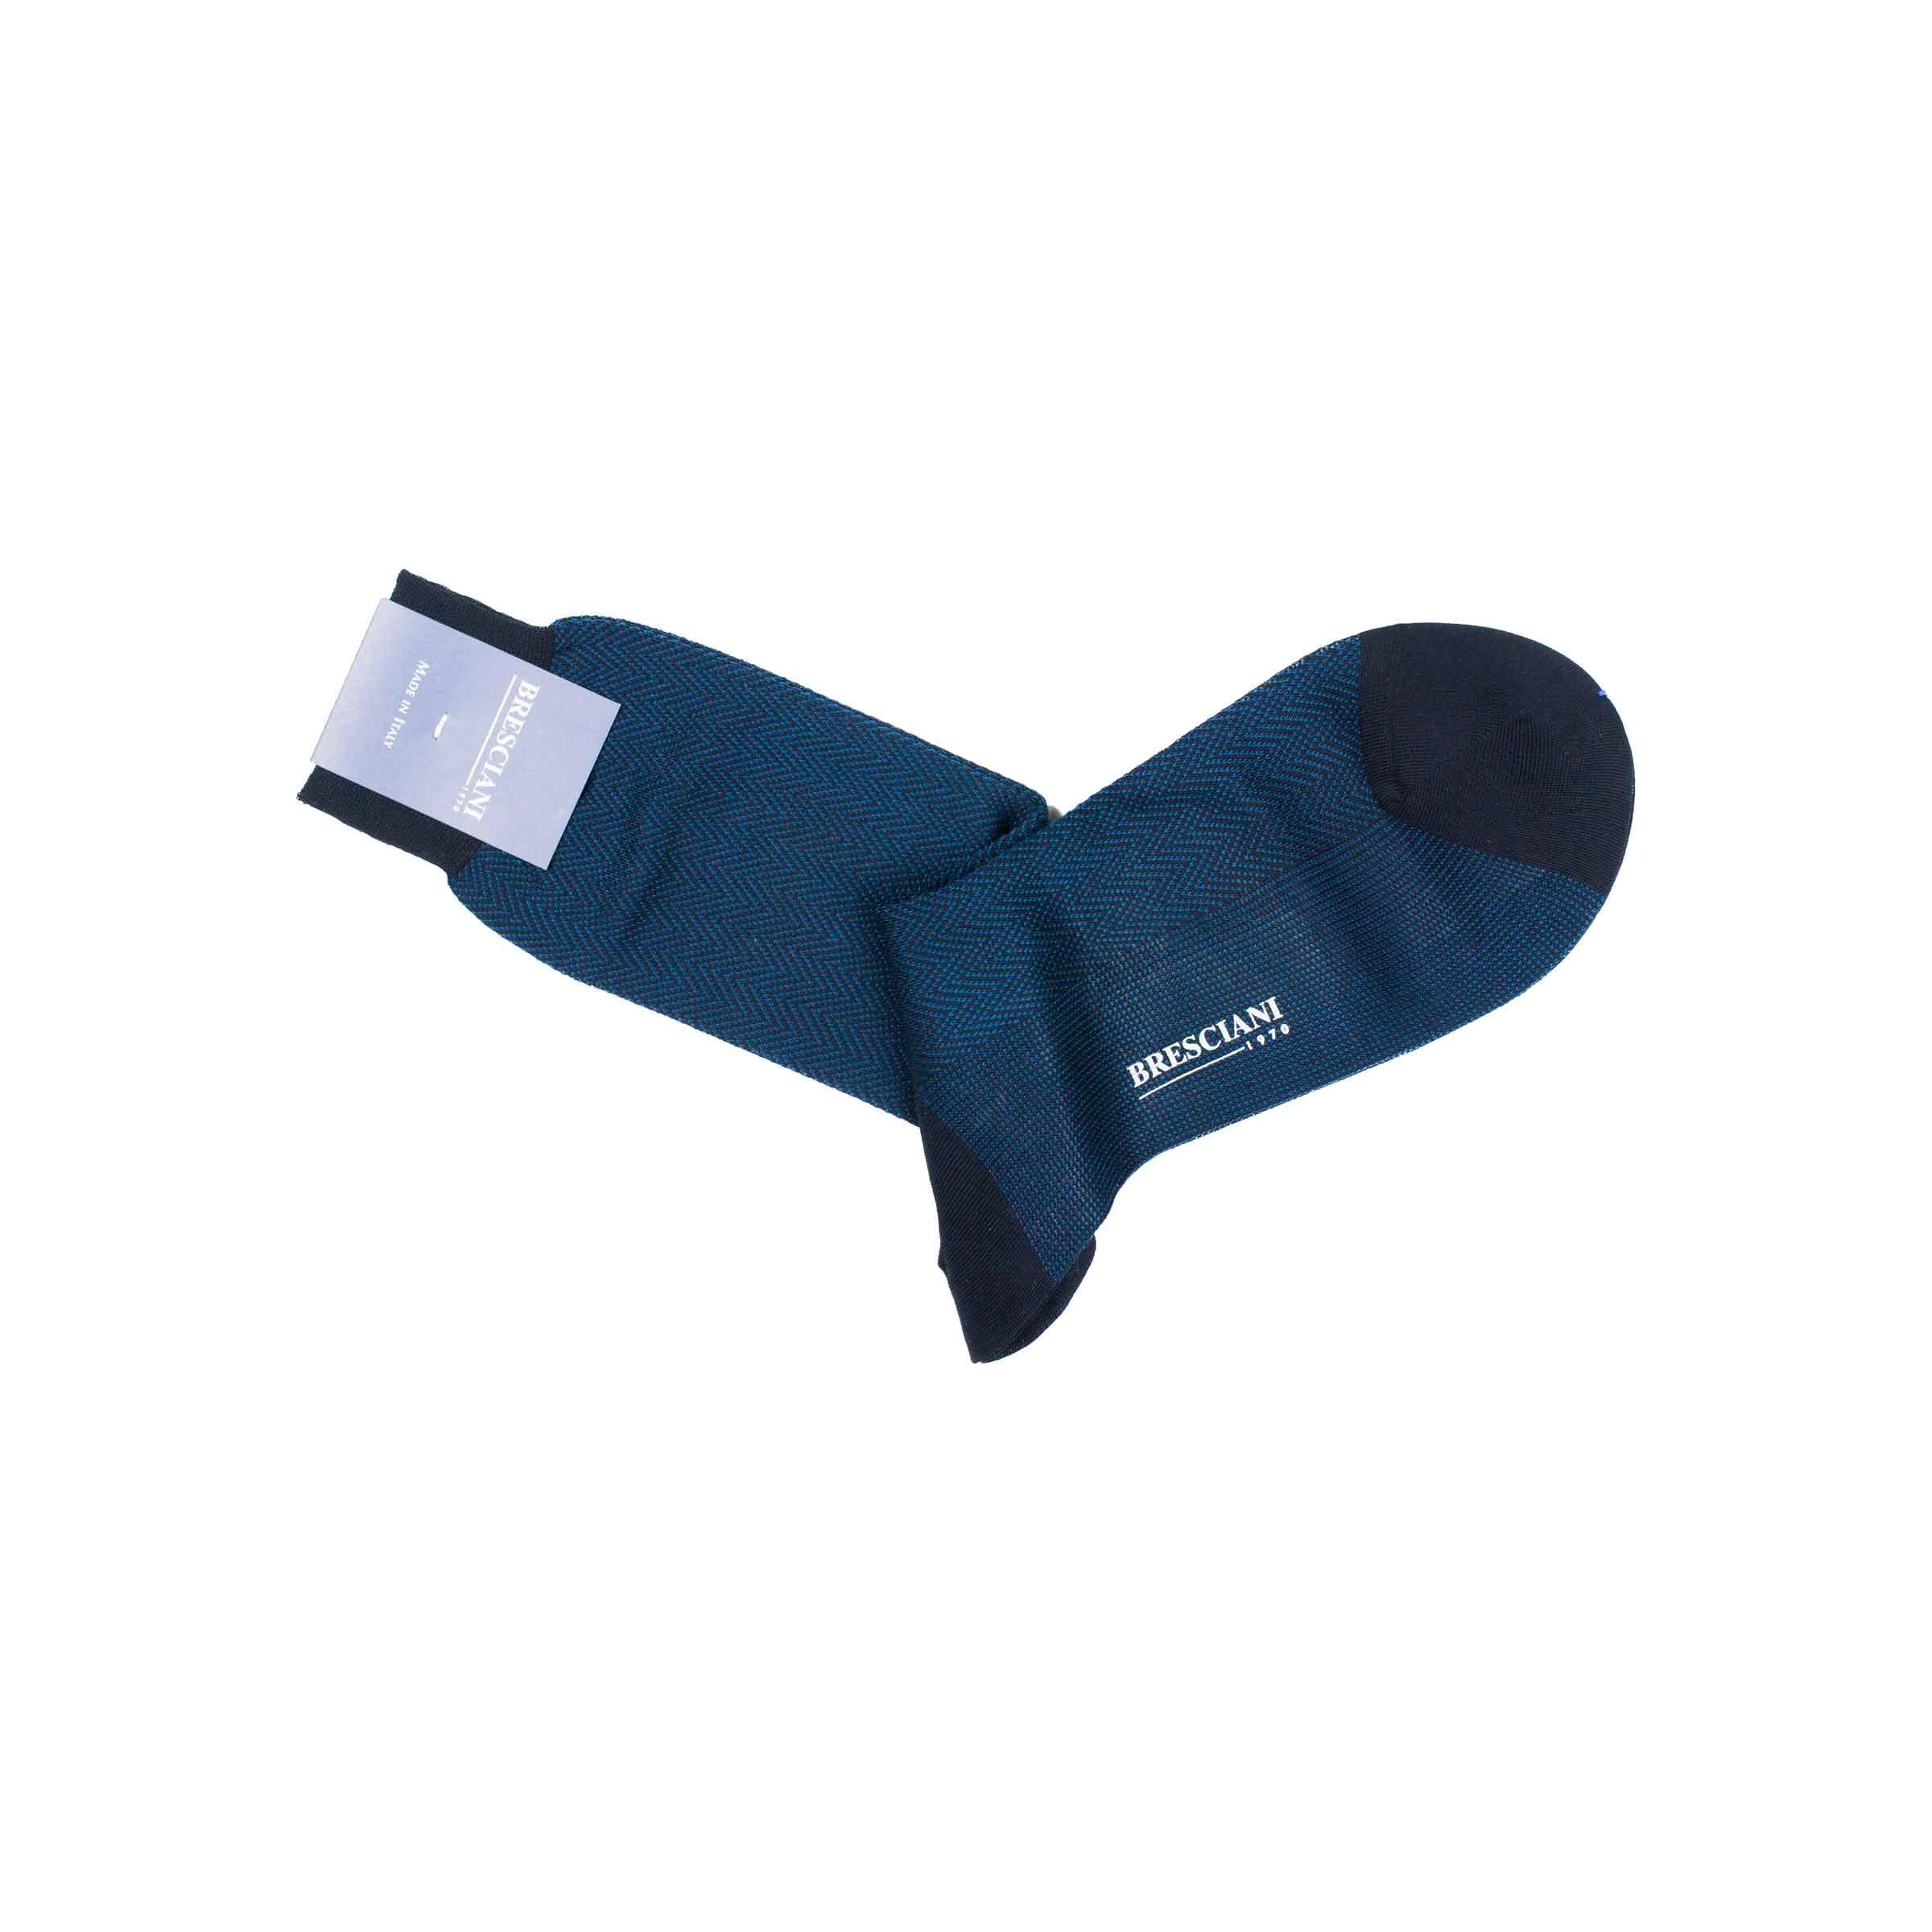 Bresciani cotton socks in blue herringbone pattern